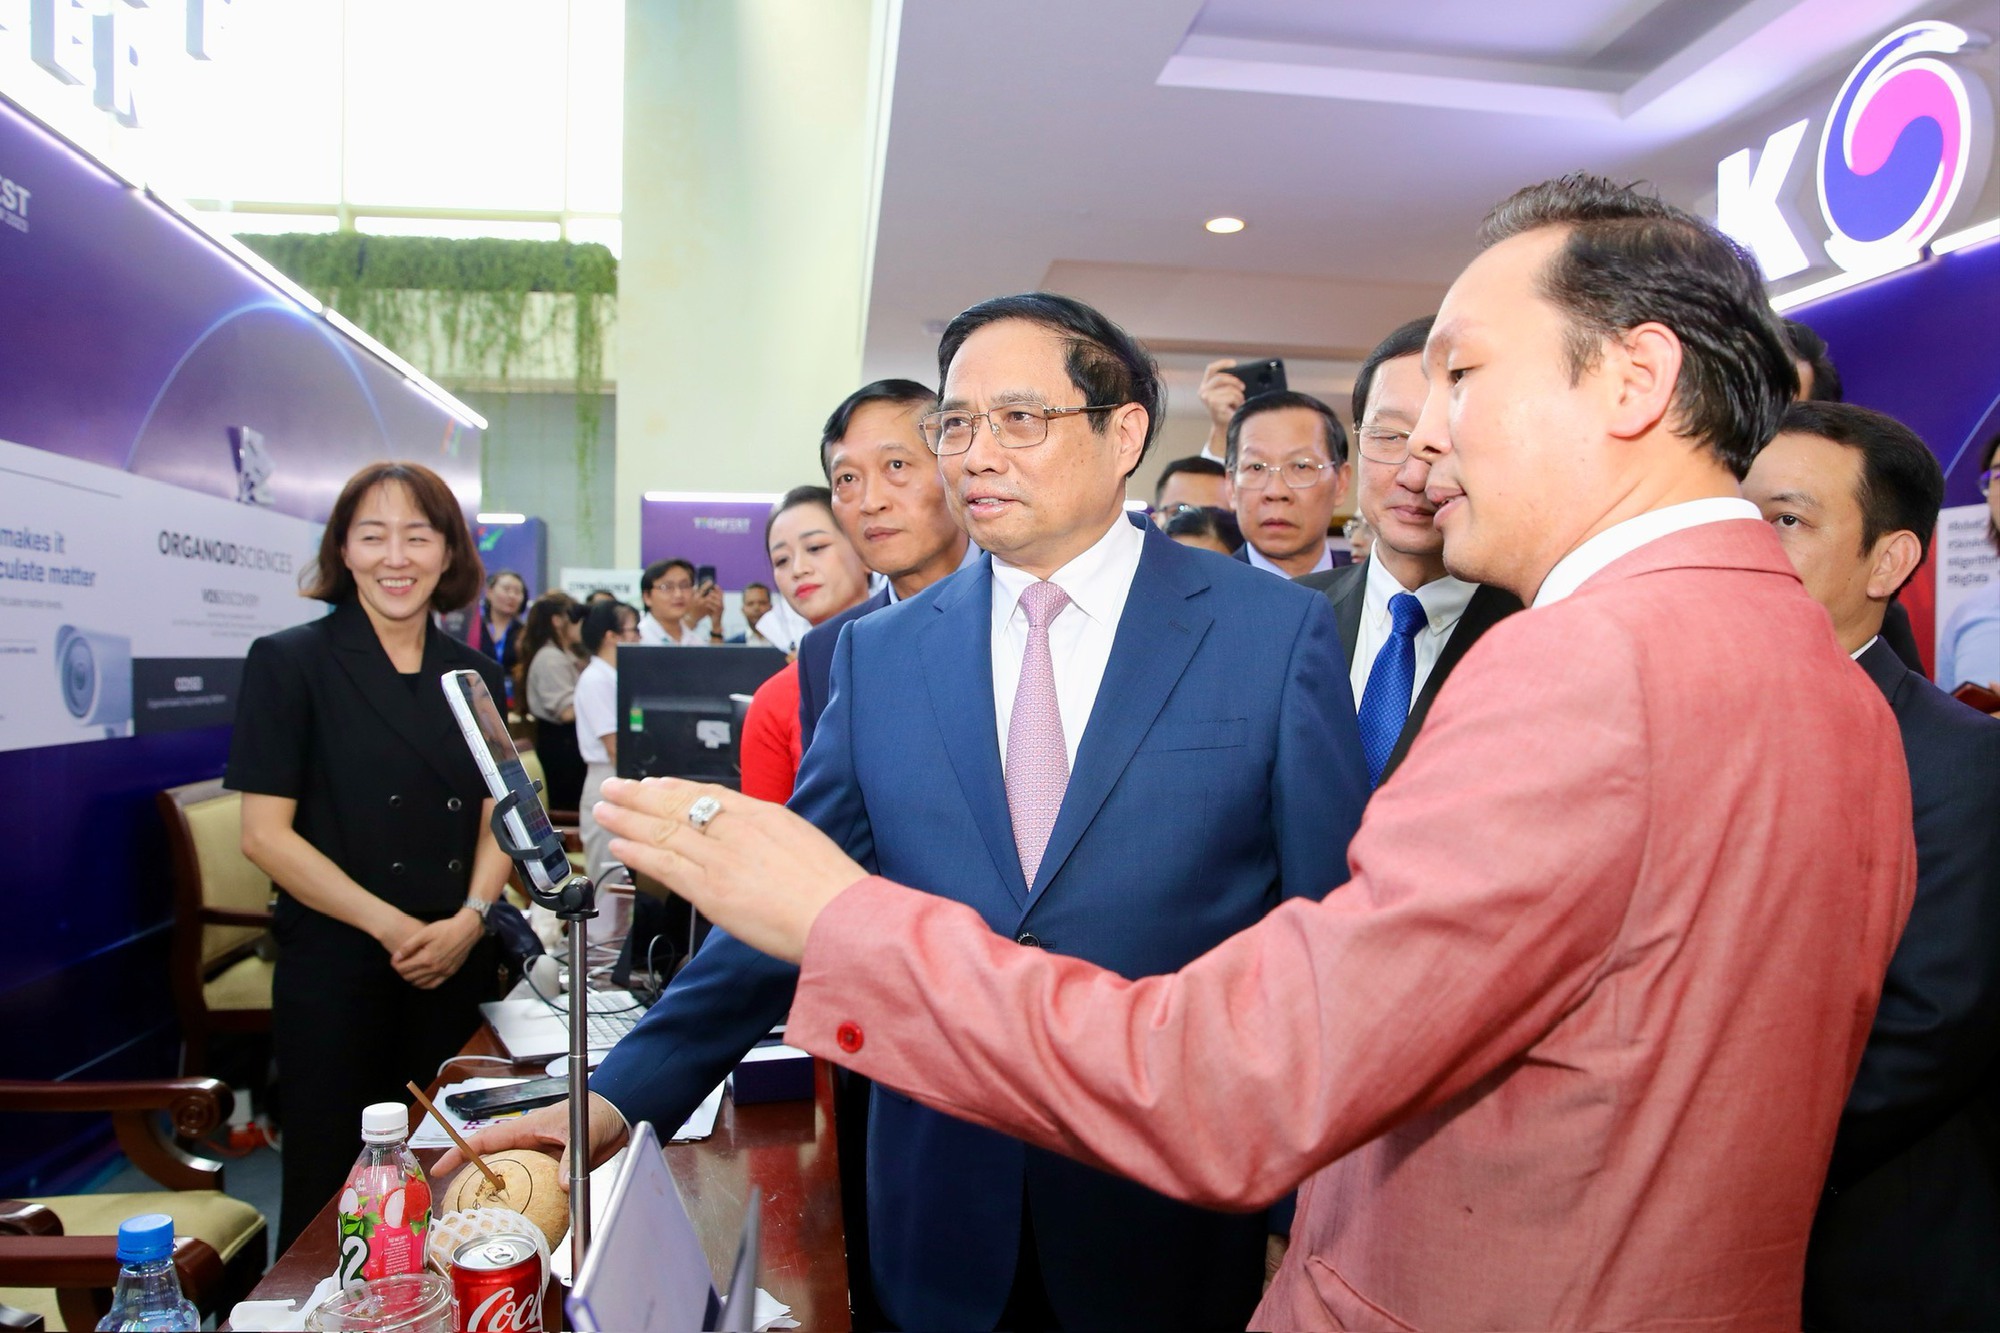 Thủ tướng kỳ vọng Việt Nam có những kỳ lân trong khởi nghiệp, đổi mới sáng tạo - Ảnh 3.